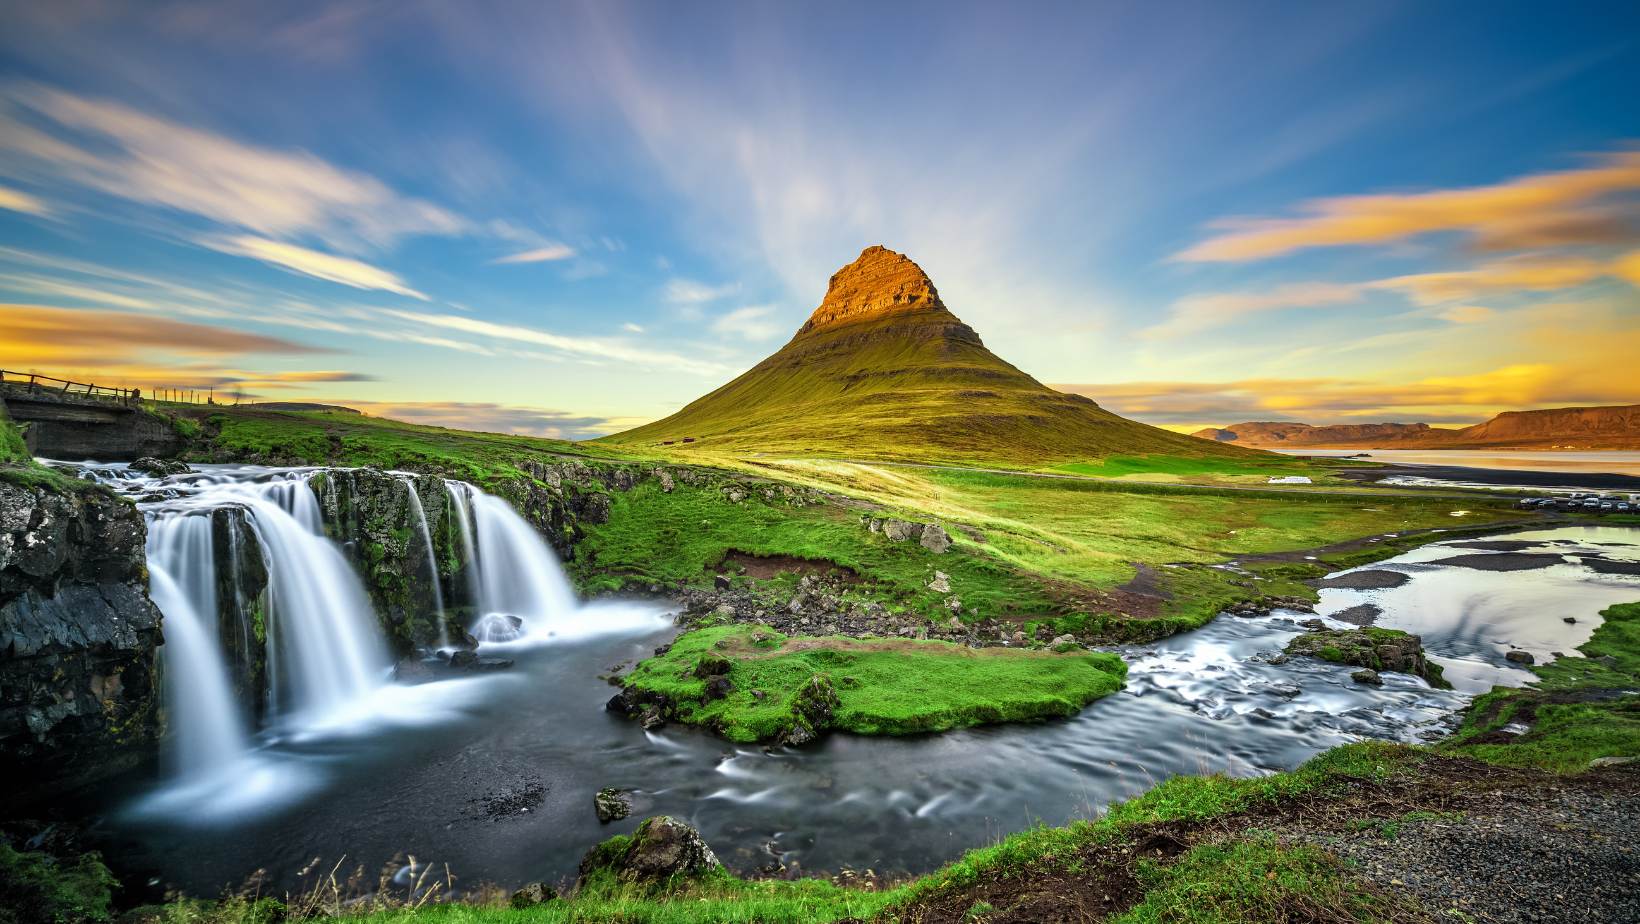 Iceland Is A Unique Destination